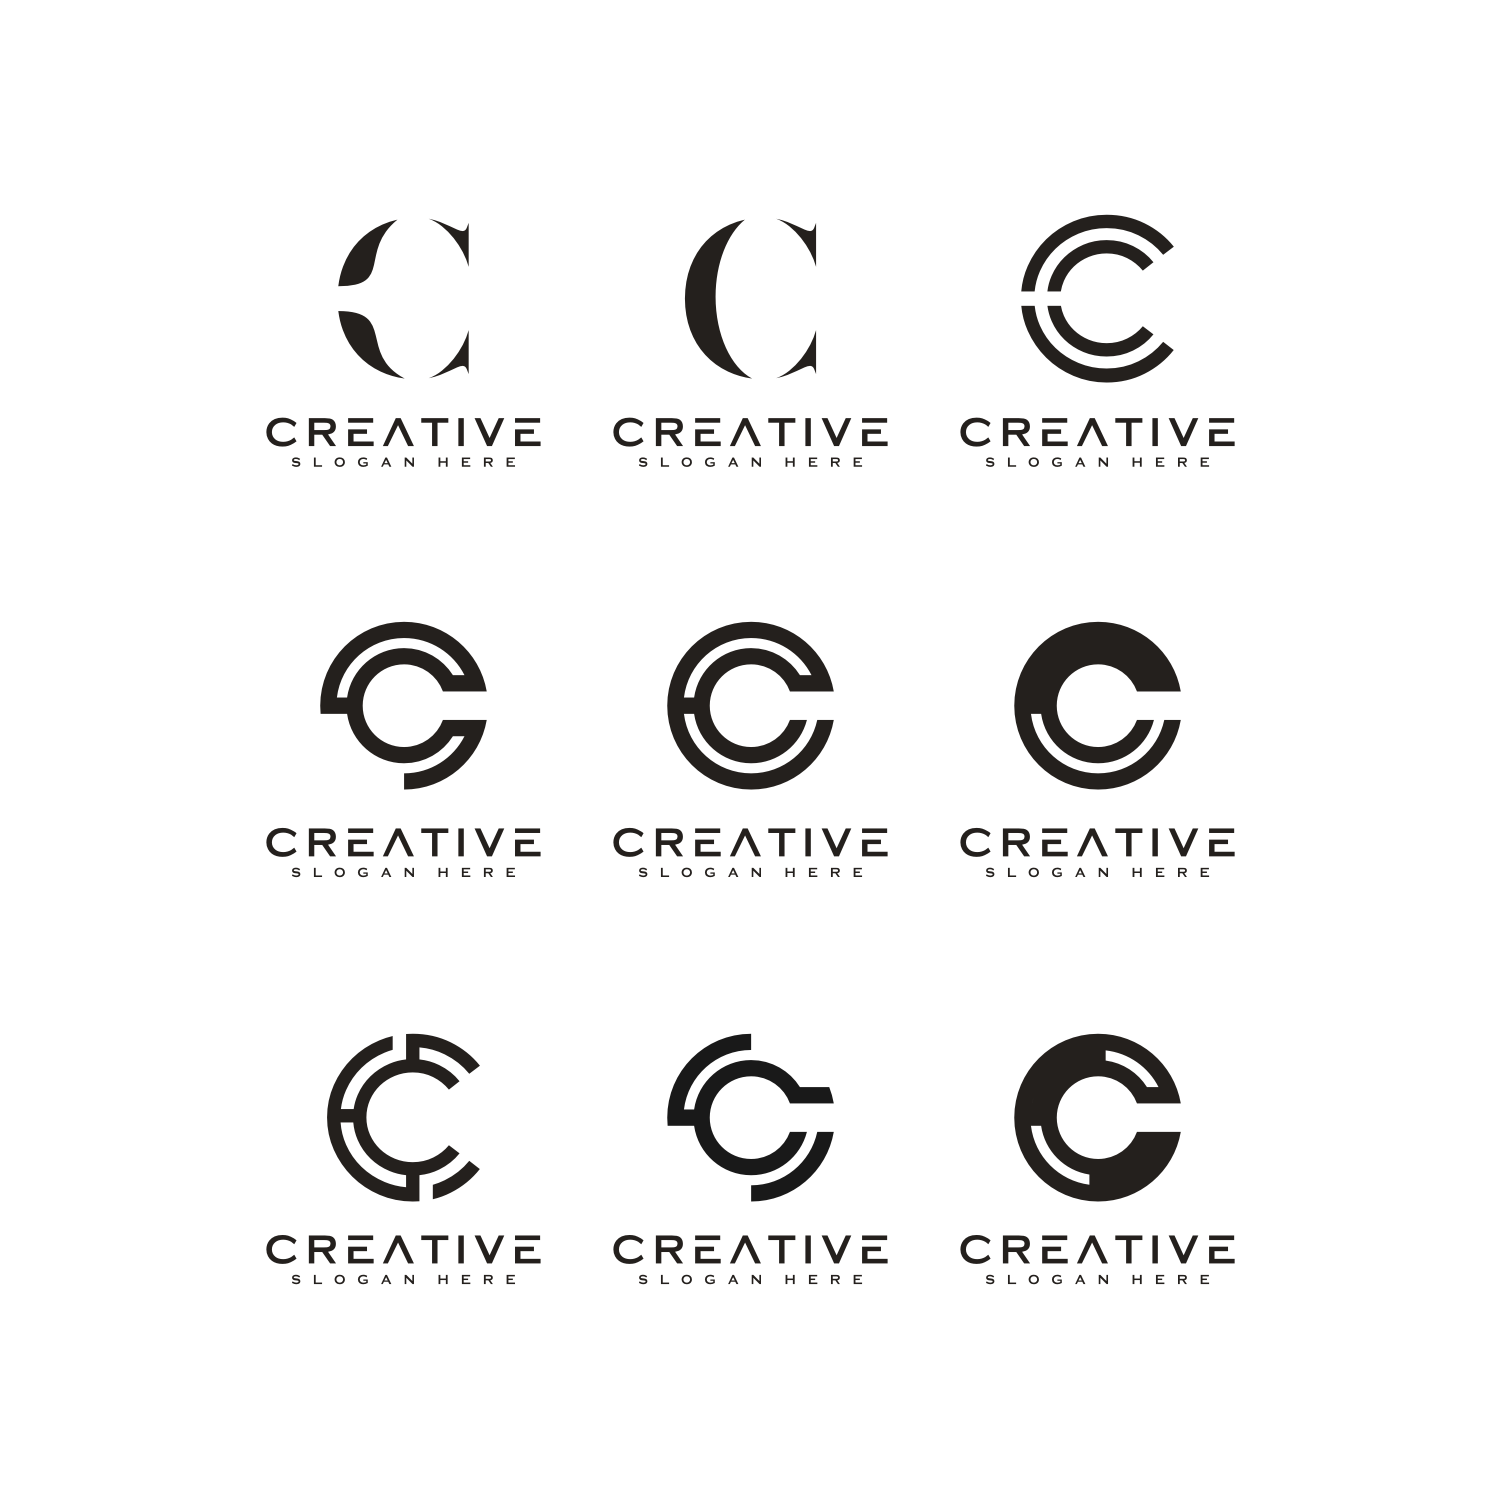 Creative Entertainment & Art Logo Design Templates